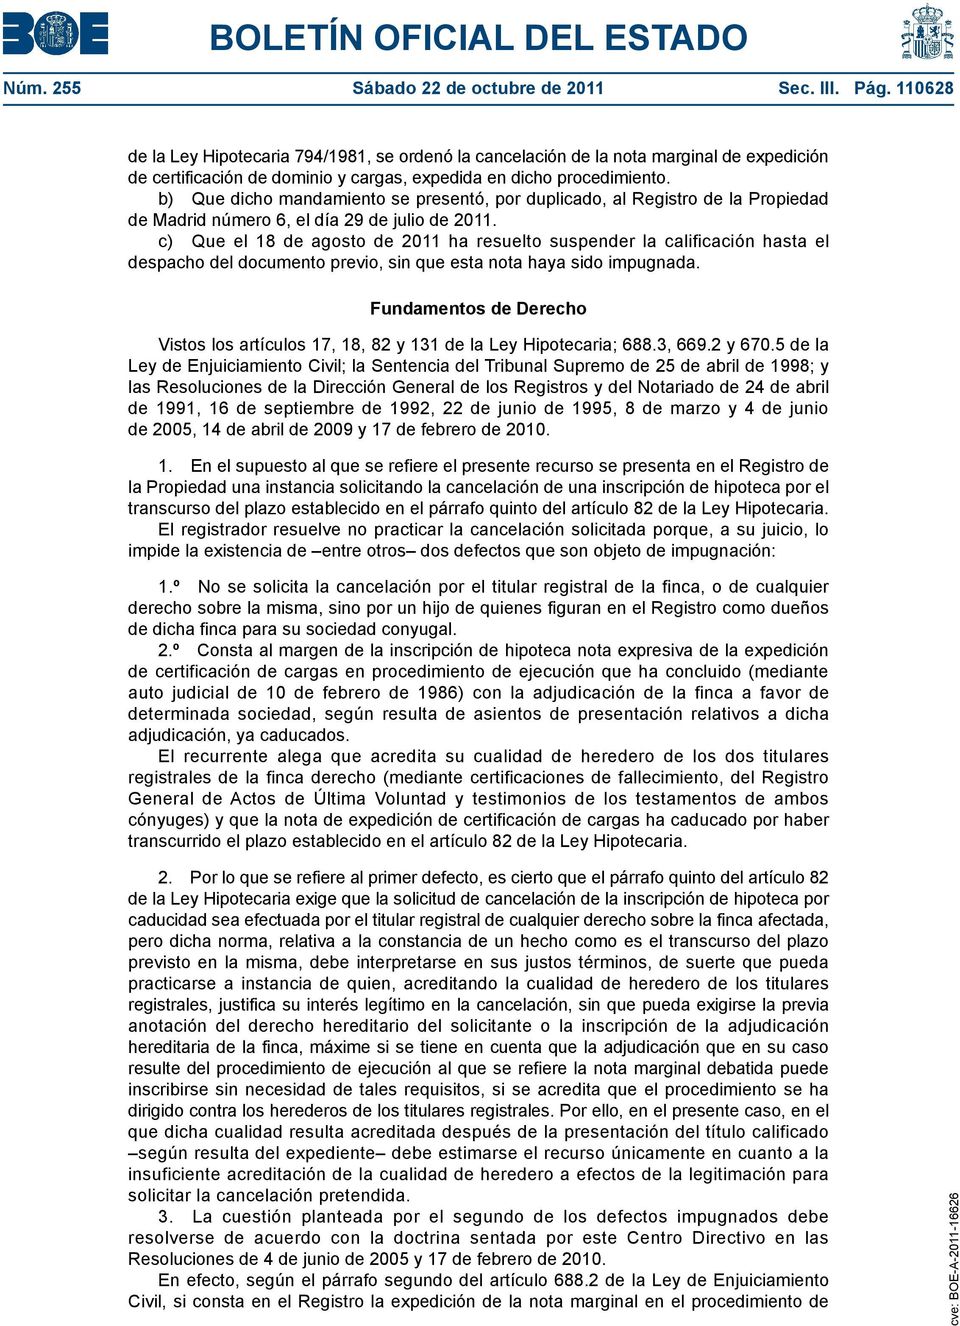 b) Que dicho mandamiento se presentó, por duplicado, al Registro de la Propiedad de Madrid número 6, el día 29 de julio de 2011.